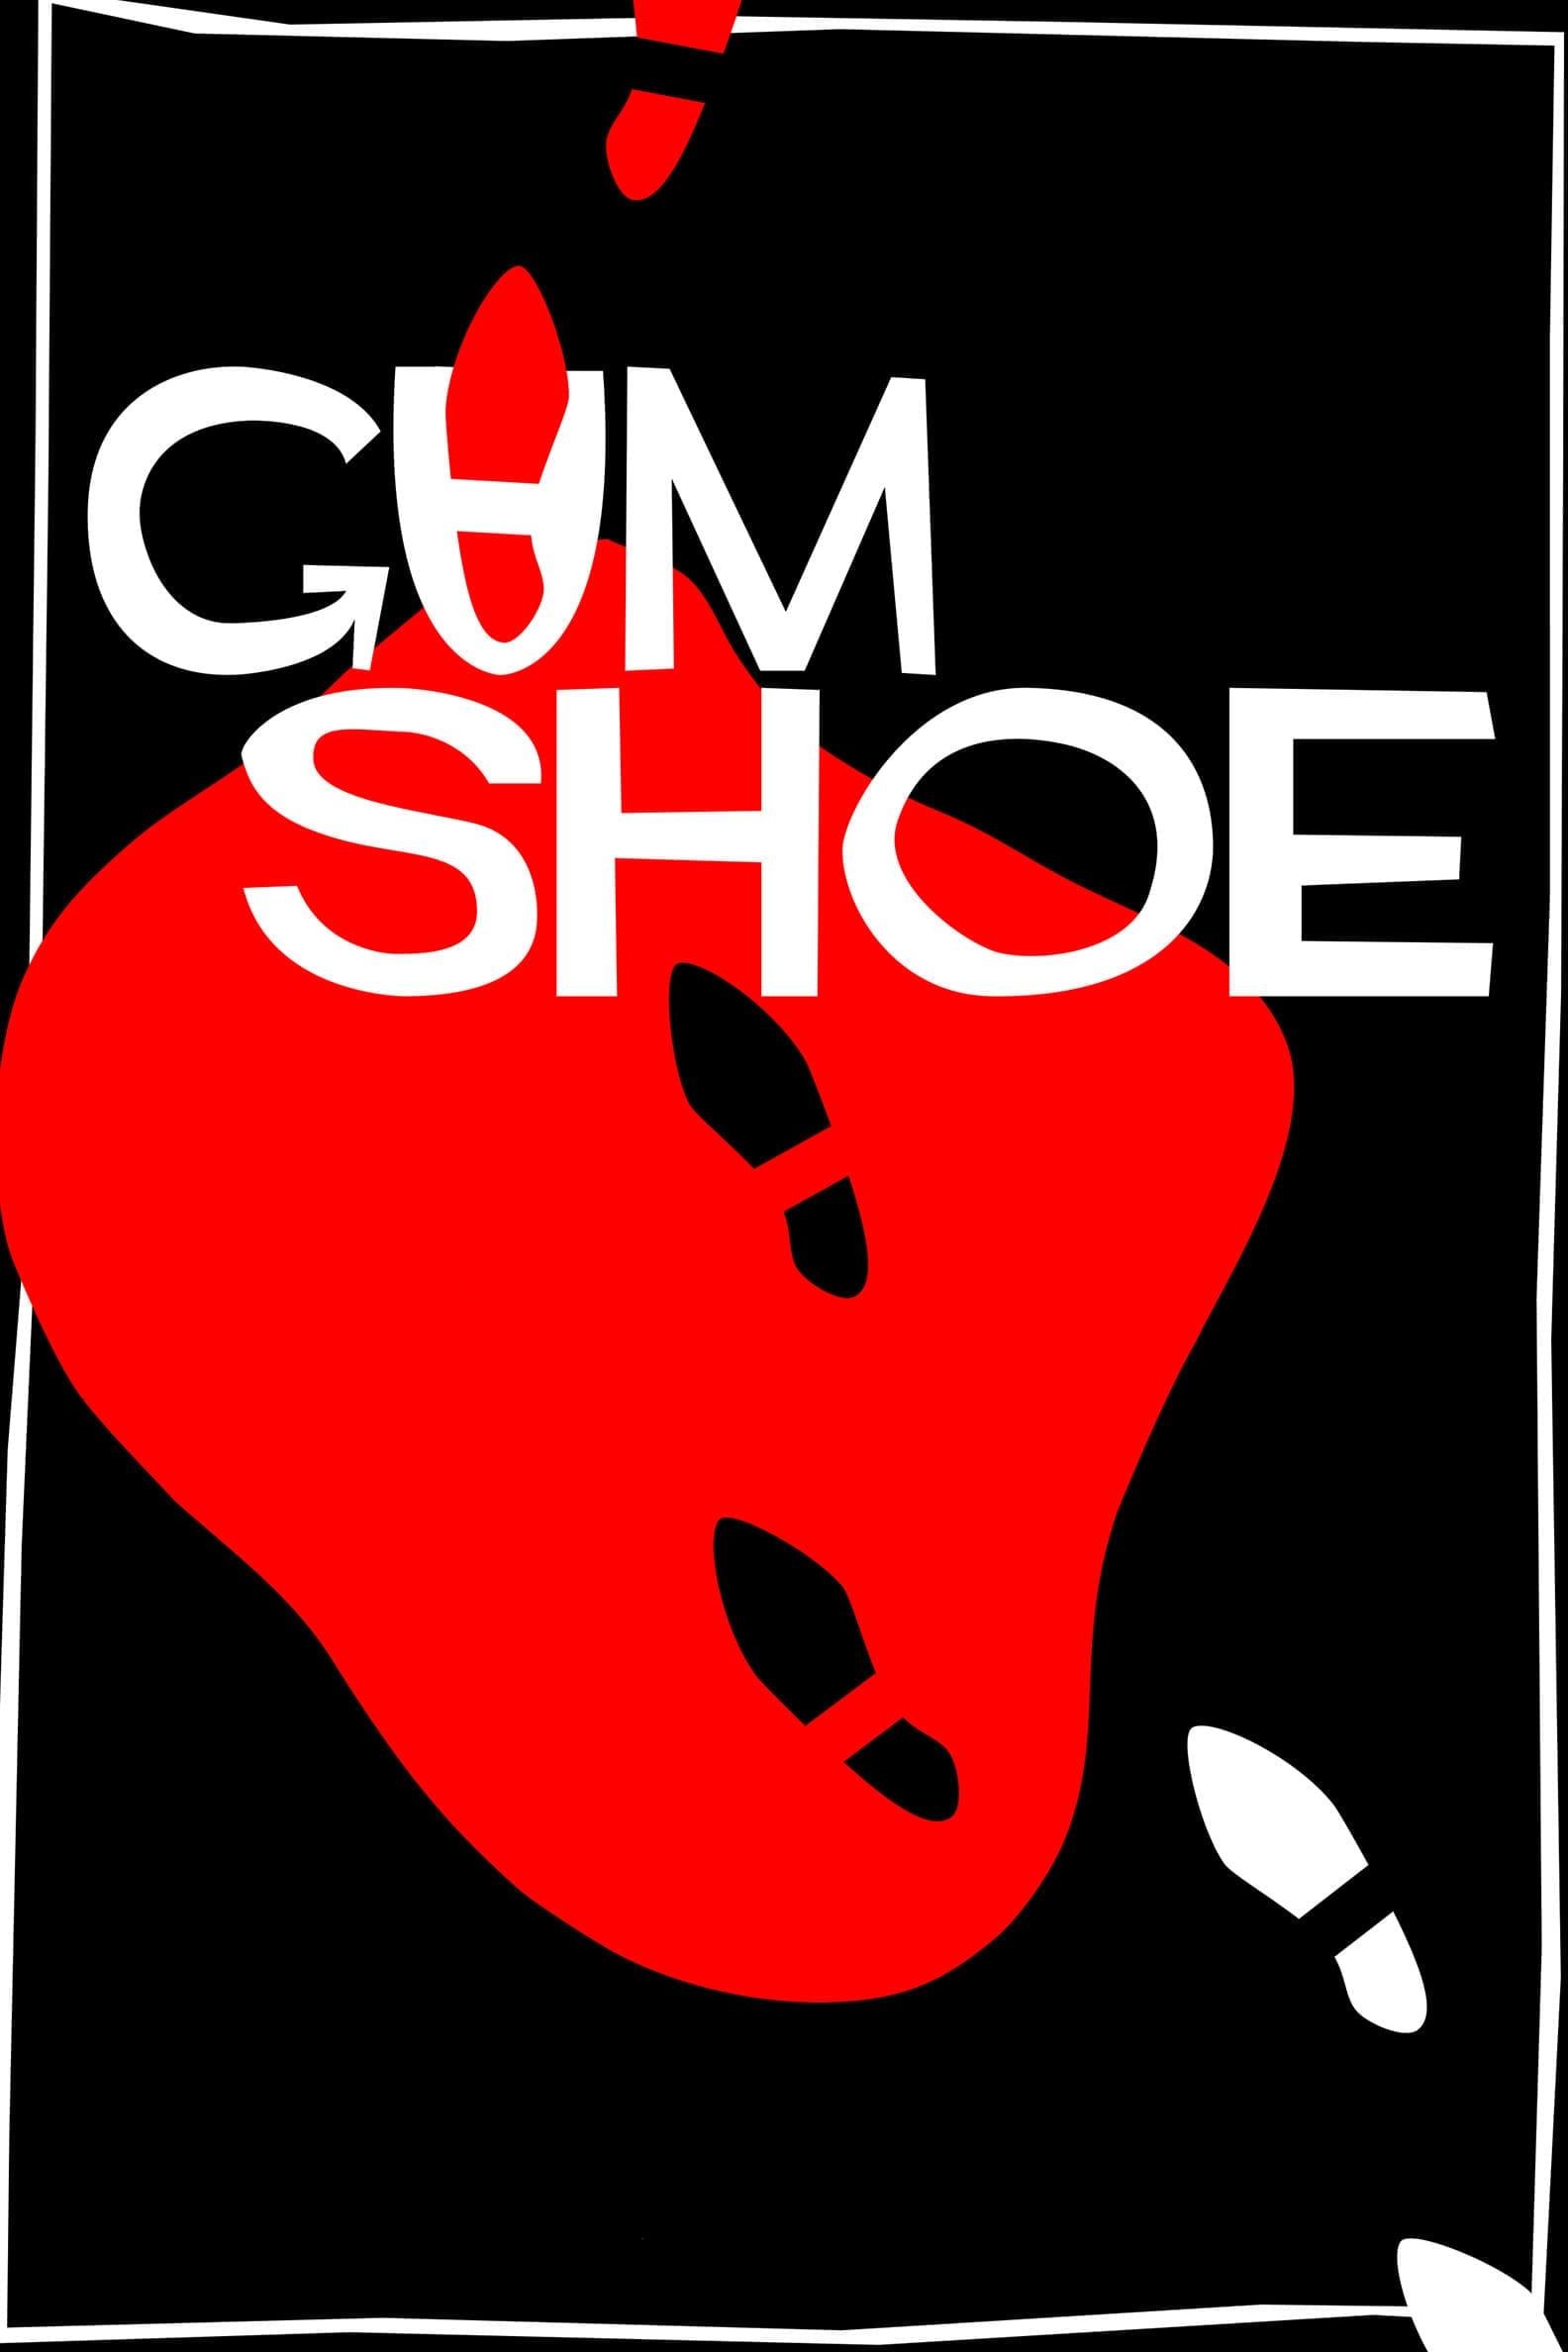 Gumshoe poster